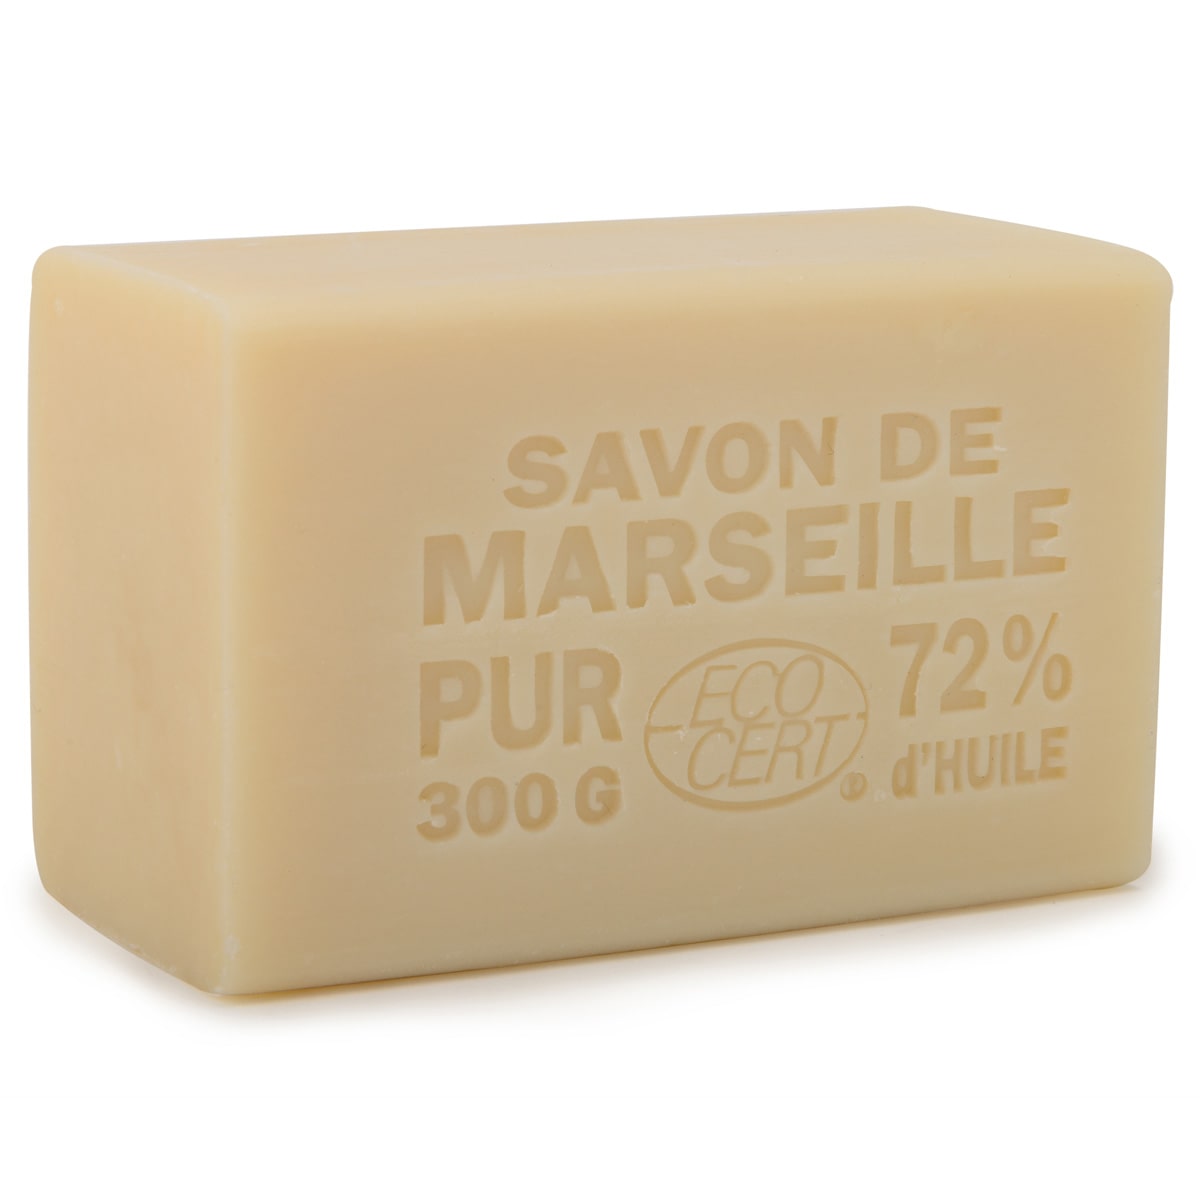 Pain de savon de Marseille aux huiles végétales 300g - Cosmos Natural